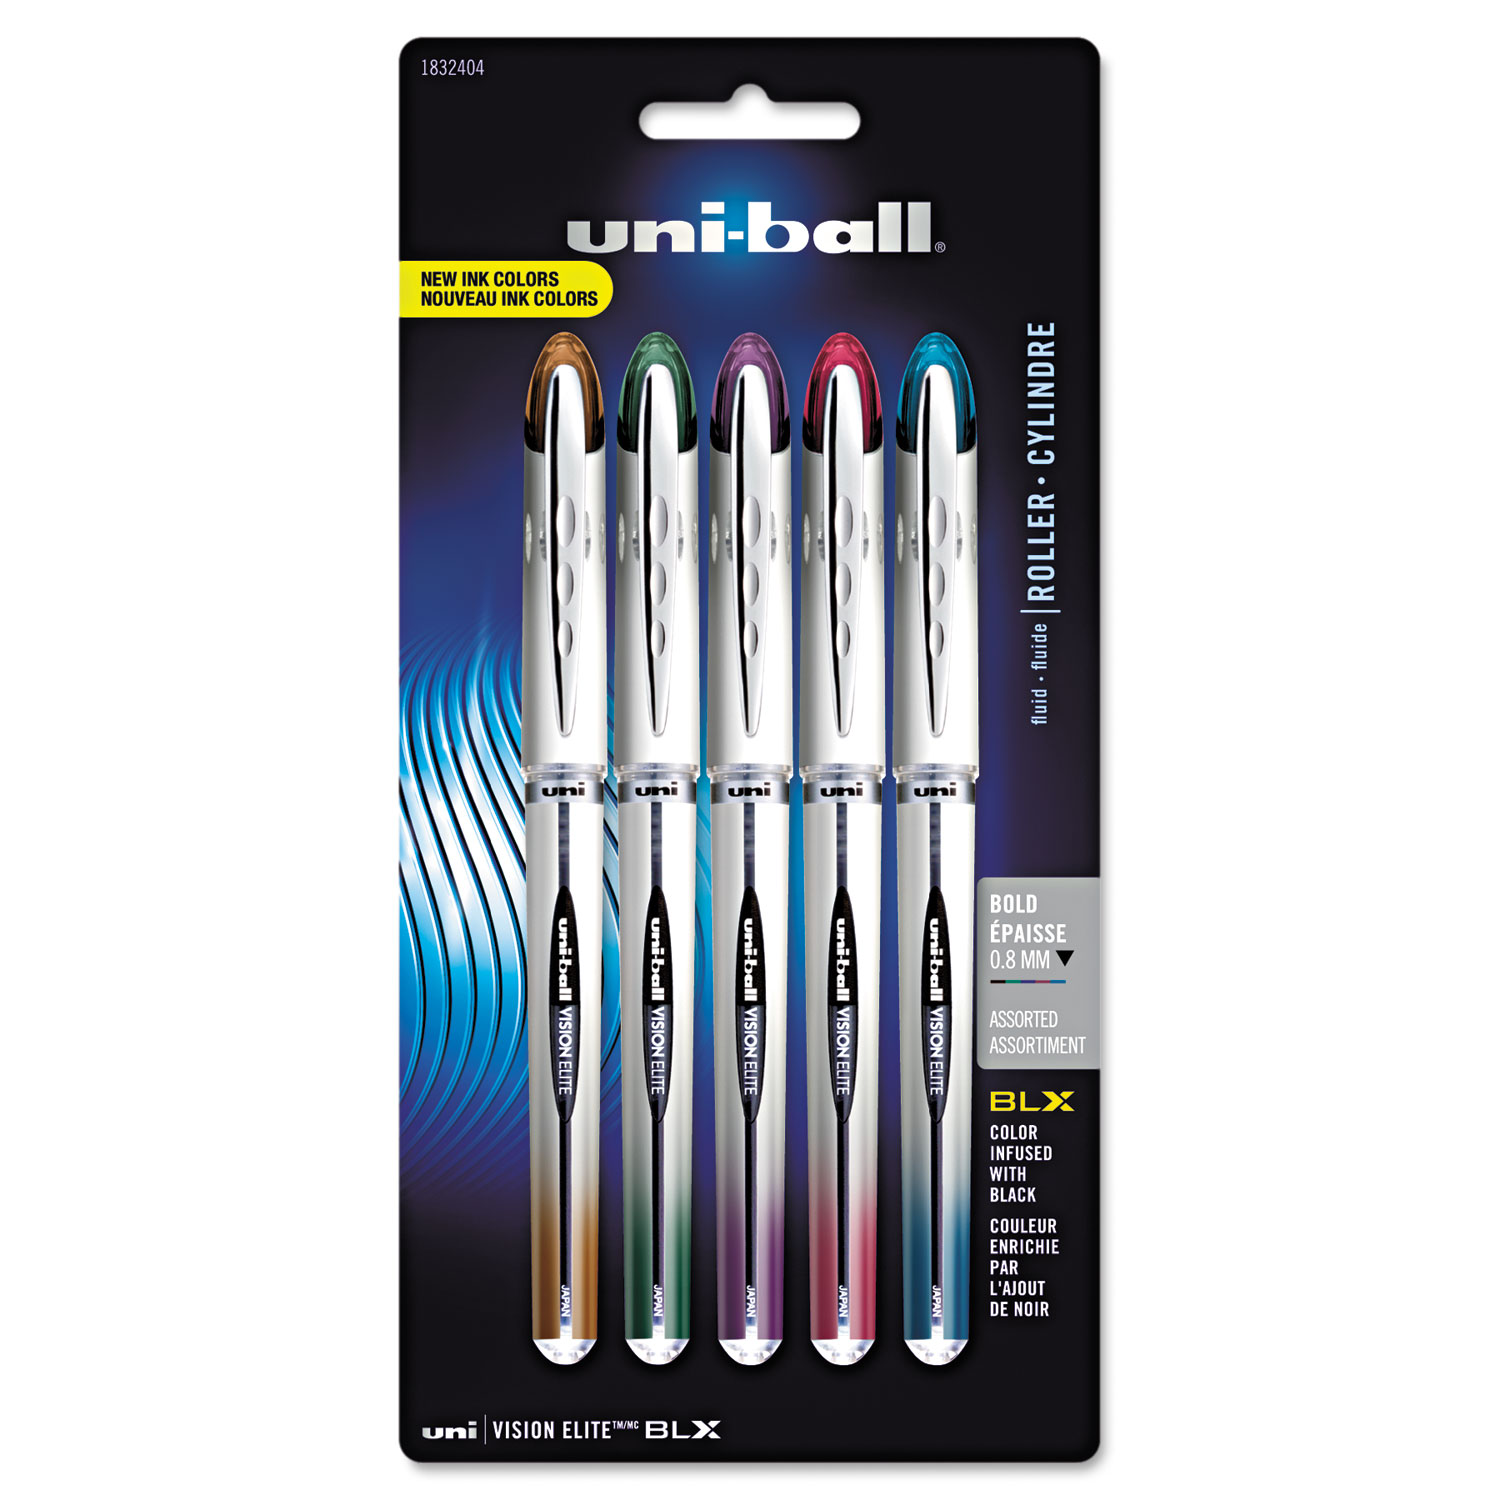 VISION ELITE BLX Series Stick Roller Ball Pen, 0.8mm, Assorted Ink/Barrel, 5/Pack